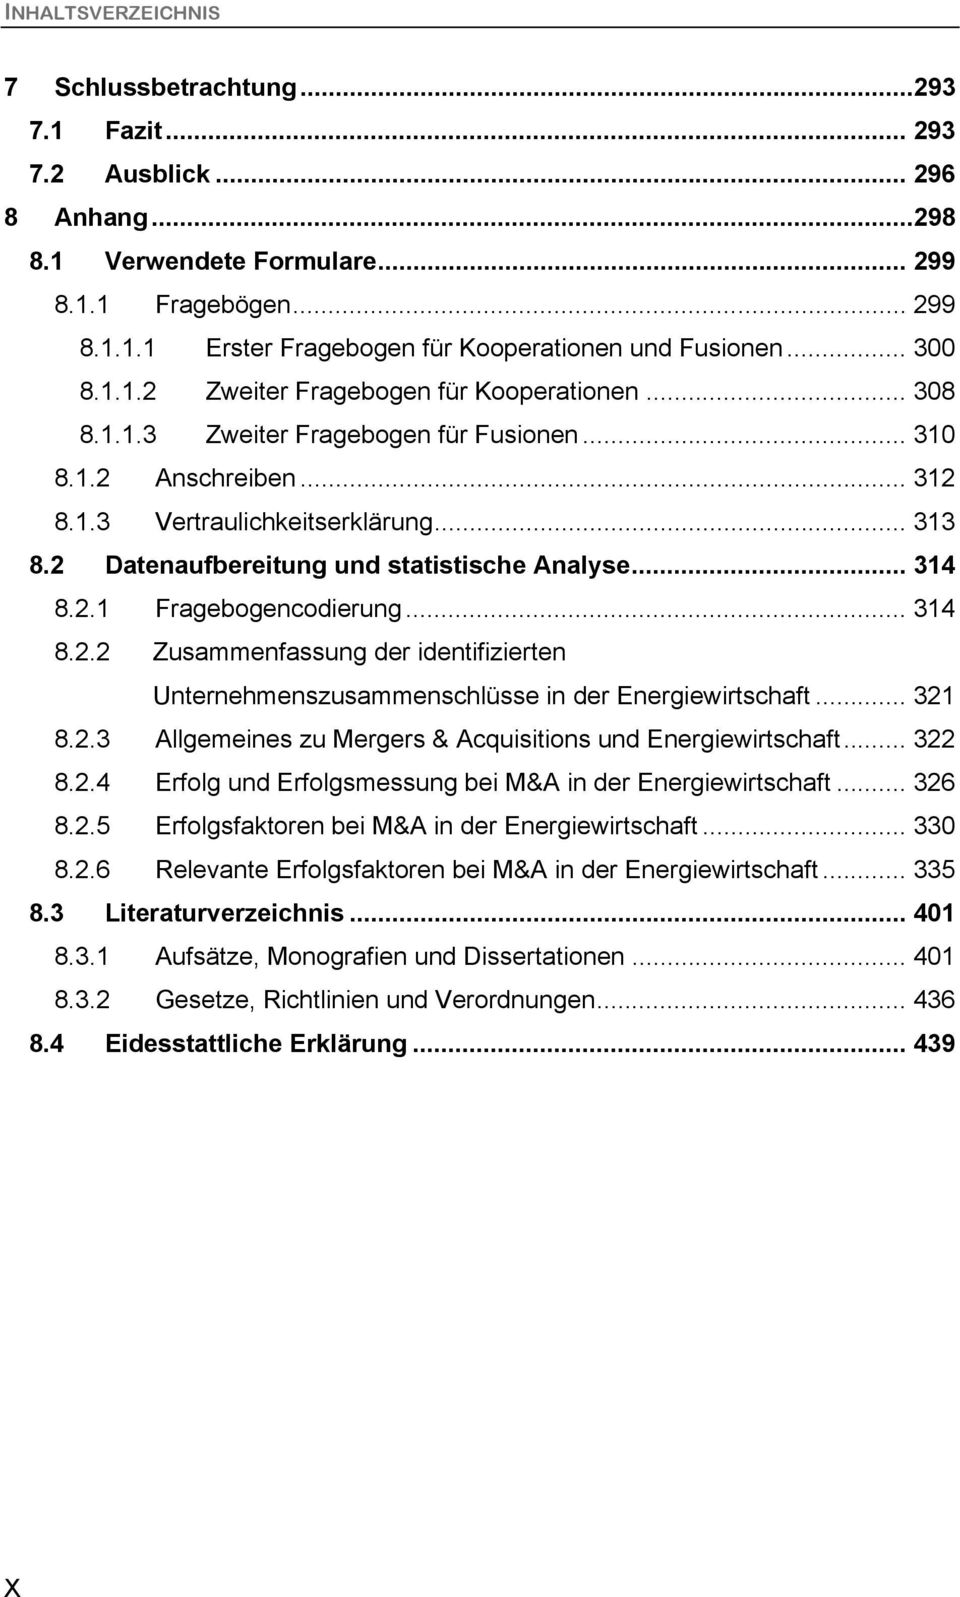 2 Datenaufbereitung und statistische Analyse... 314 8.2.1 Fragebogencodierung... 314 8.2.2 Zusammenfassung der identifizierten Unternehmenszusammenschlüsse in der Energiewirtschaft... 321 8.2.3 Allgemeines zu Mergers & Acquisitions und Energiewirtschaft.